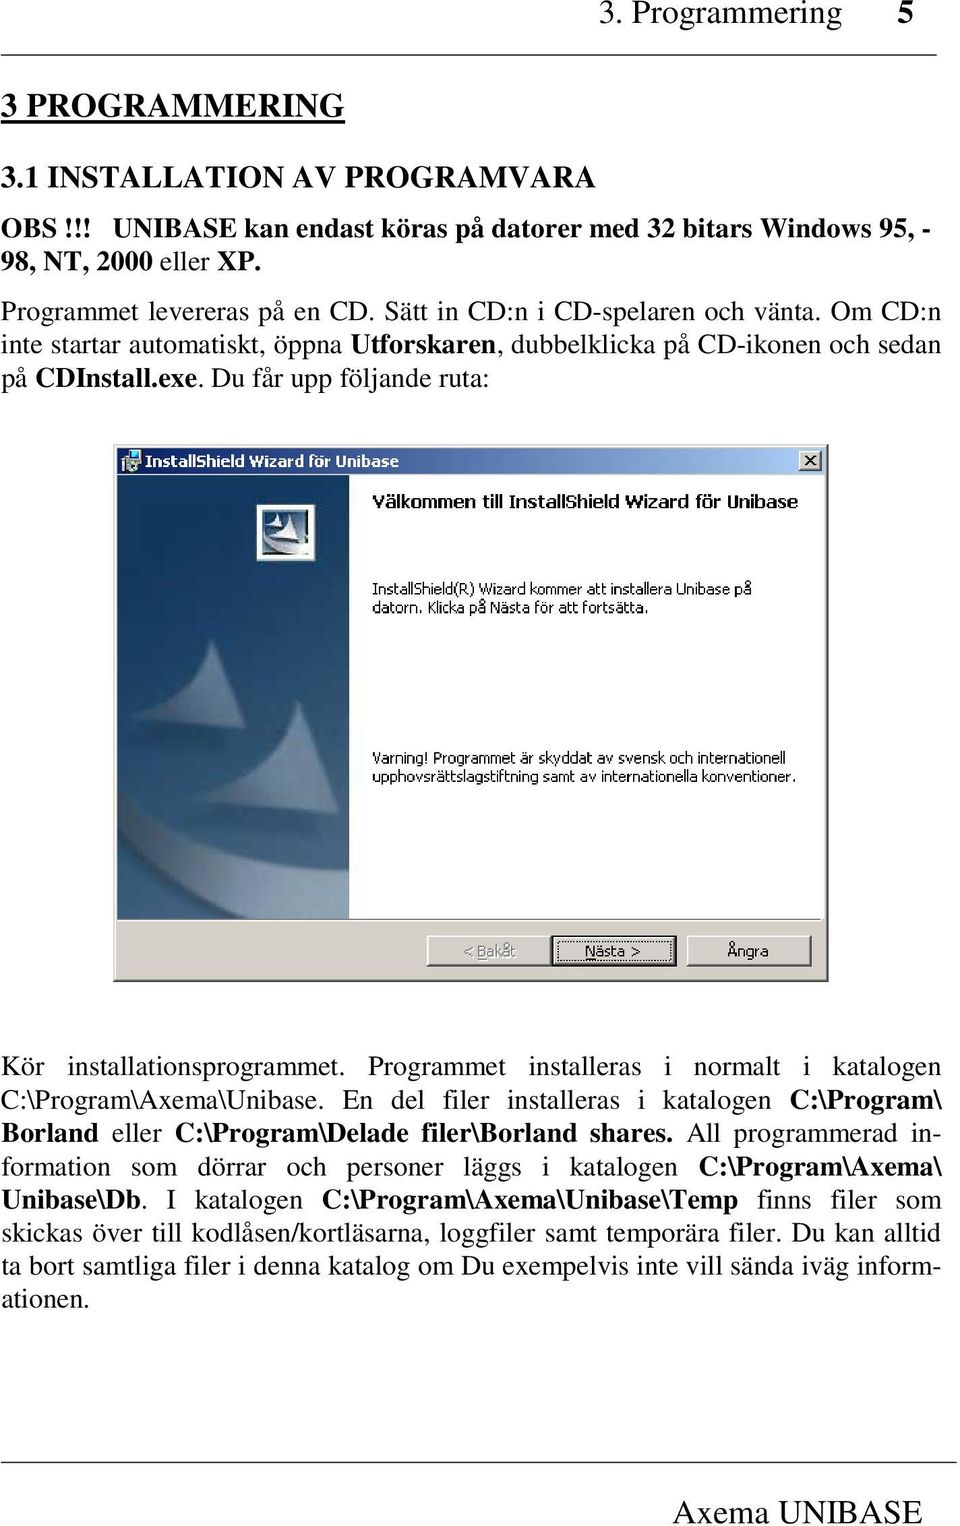 Programmet installeras i normalt i katalogen C:\Program\Axema\Unibase. En del filer installeras i katalogen C:\Program\ Borland eller C:\Program\Delade filer\borland shares.